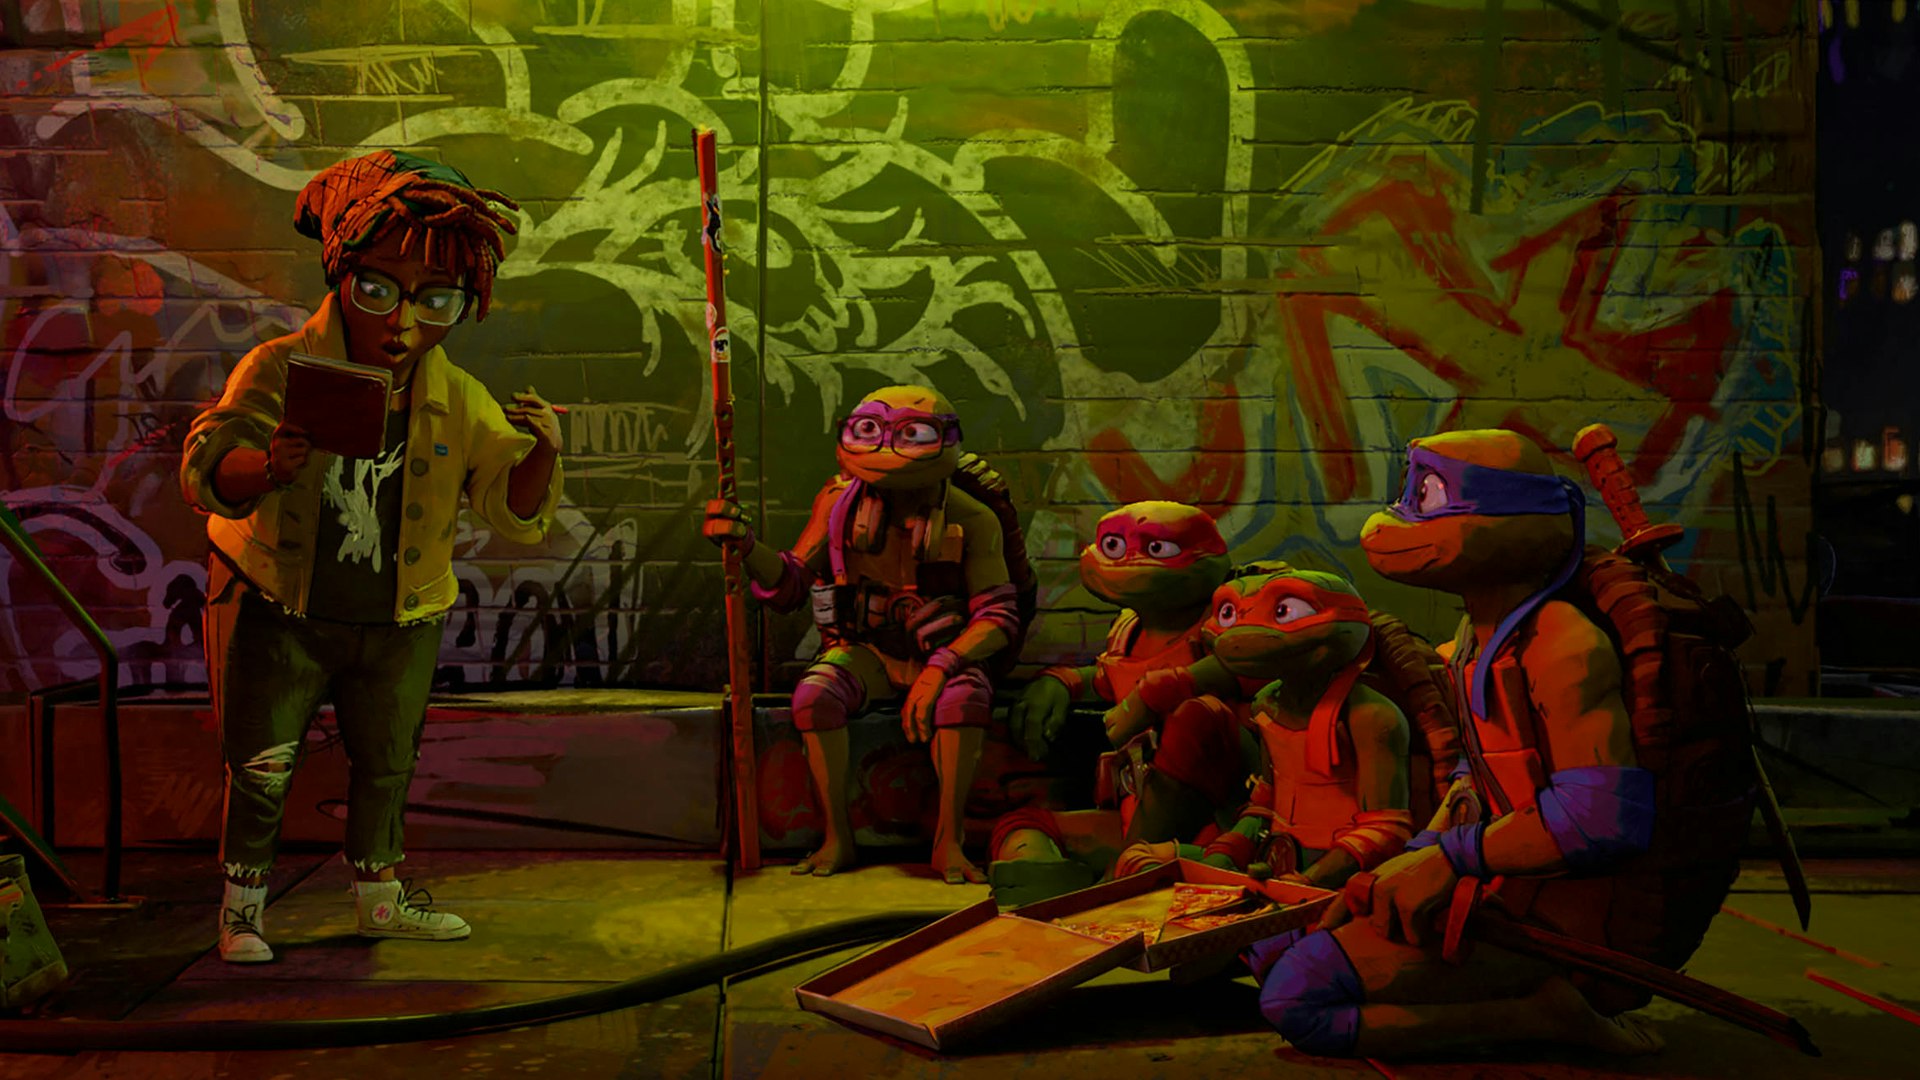 Teenage Mutant Ninja Turtles: Mutant Mayhem - Season - TV Series